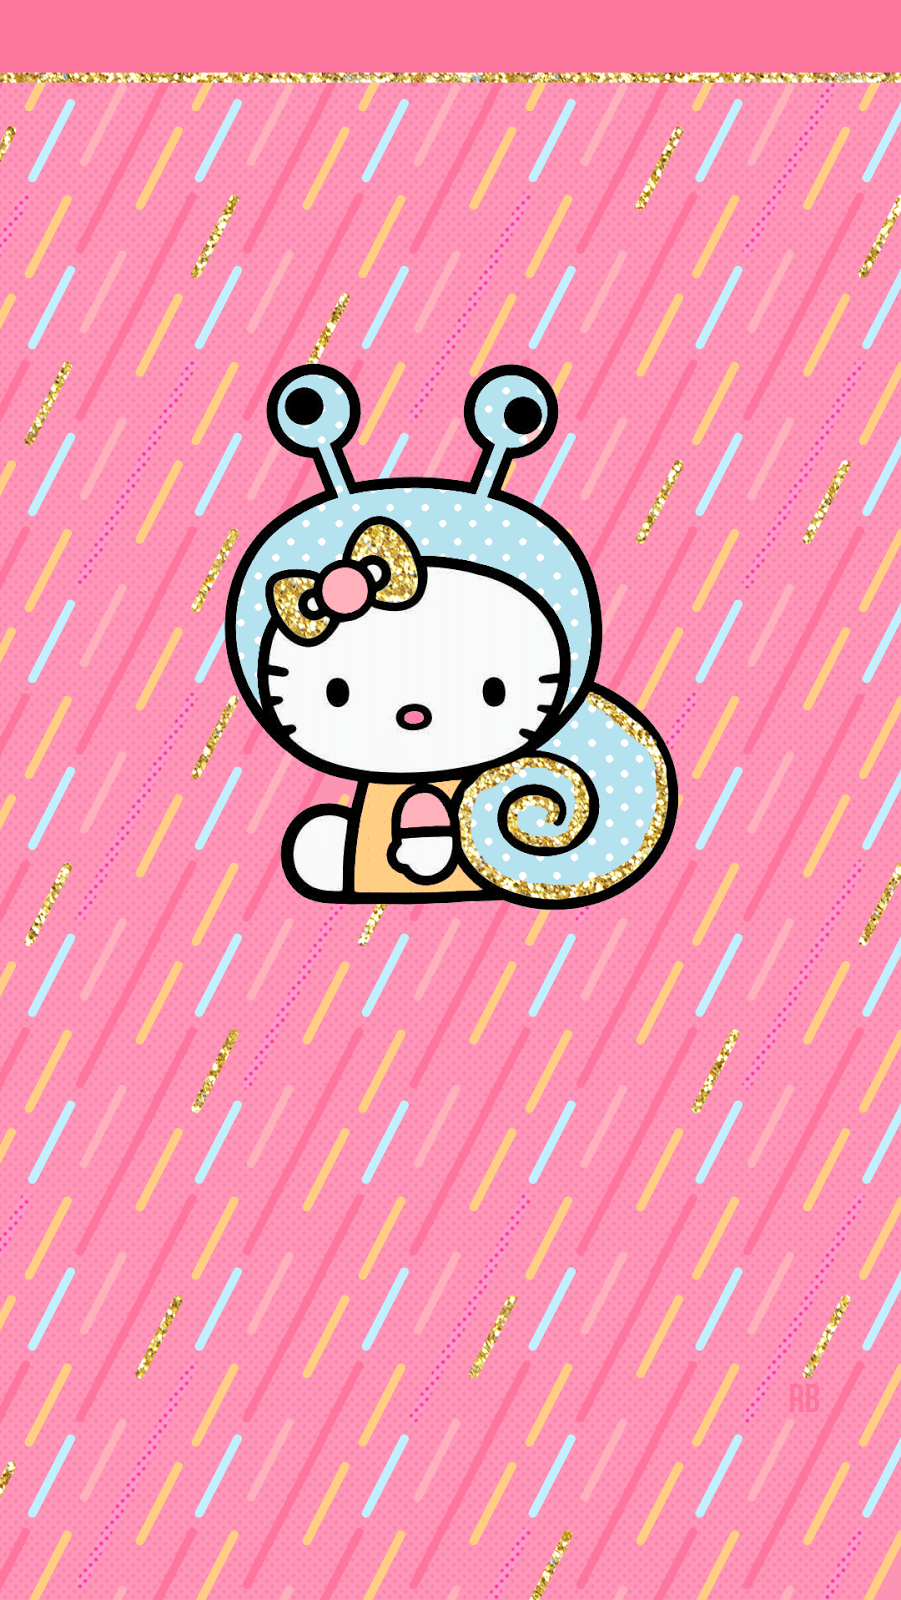 Hello Kitty là biểu tượng không thể thiếu trong cuộc sống của mọi cô gái. Với nền hồng truyền thống và biểu tượng độc đáo của mình, Hello Kitty là một trong những nhân vật được yêu thích nhất trên thế giới. Hãy cùng khám phá những hình ảnh đẹp và dễ thương liên quan đến Hello Kitty và cùng bắt đầu một ngày mới tràn đầy năng lượng.